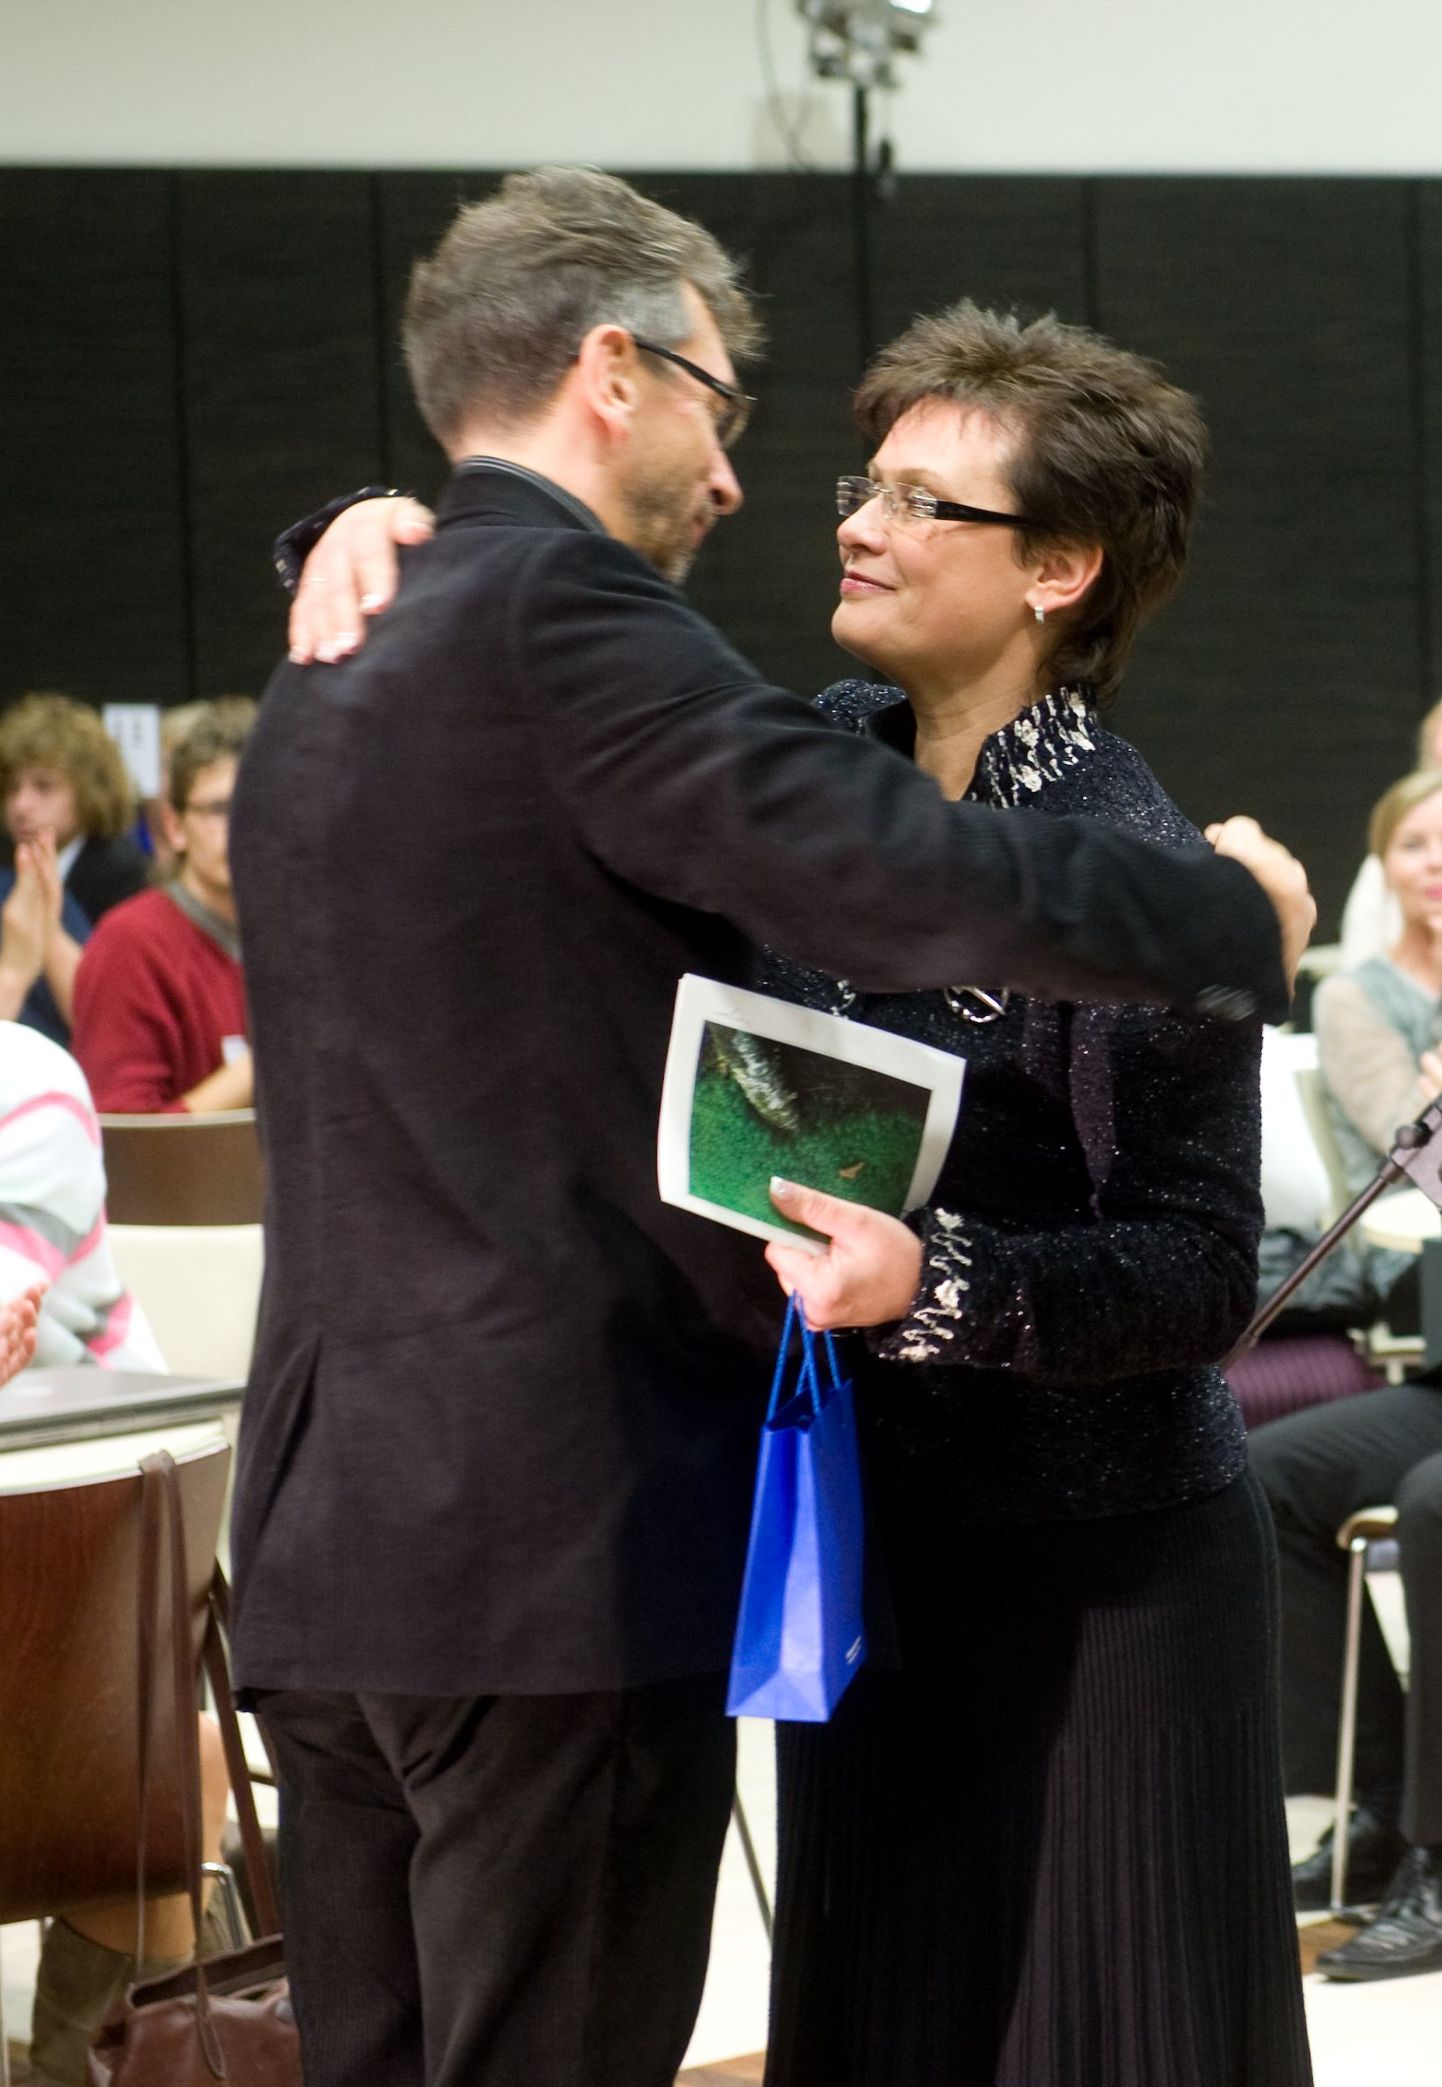 Министр культуры Эстонии Лайне Янес поздравляет обладателя титула "Гражданин года - 2009" Эркки-Свена Тюйра.